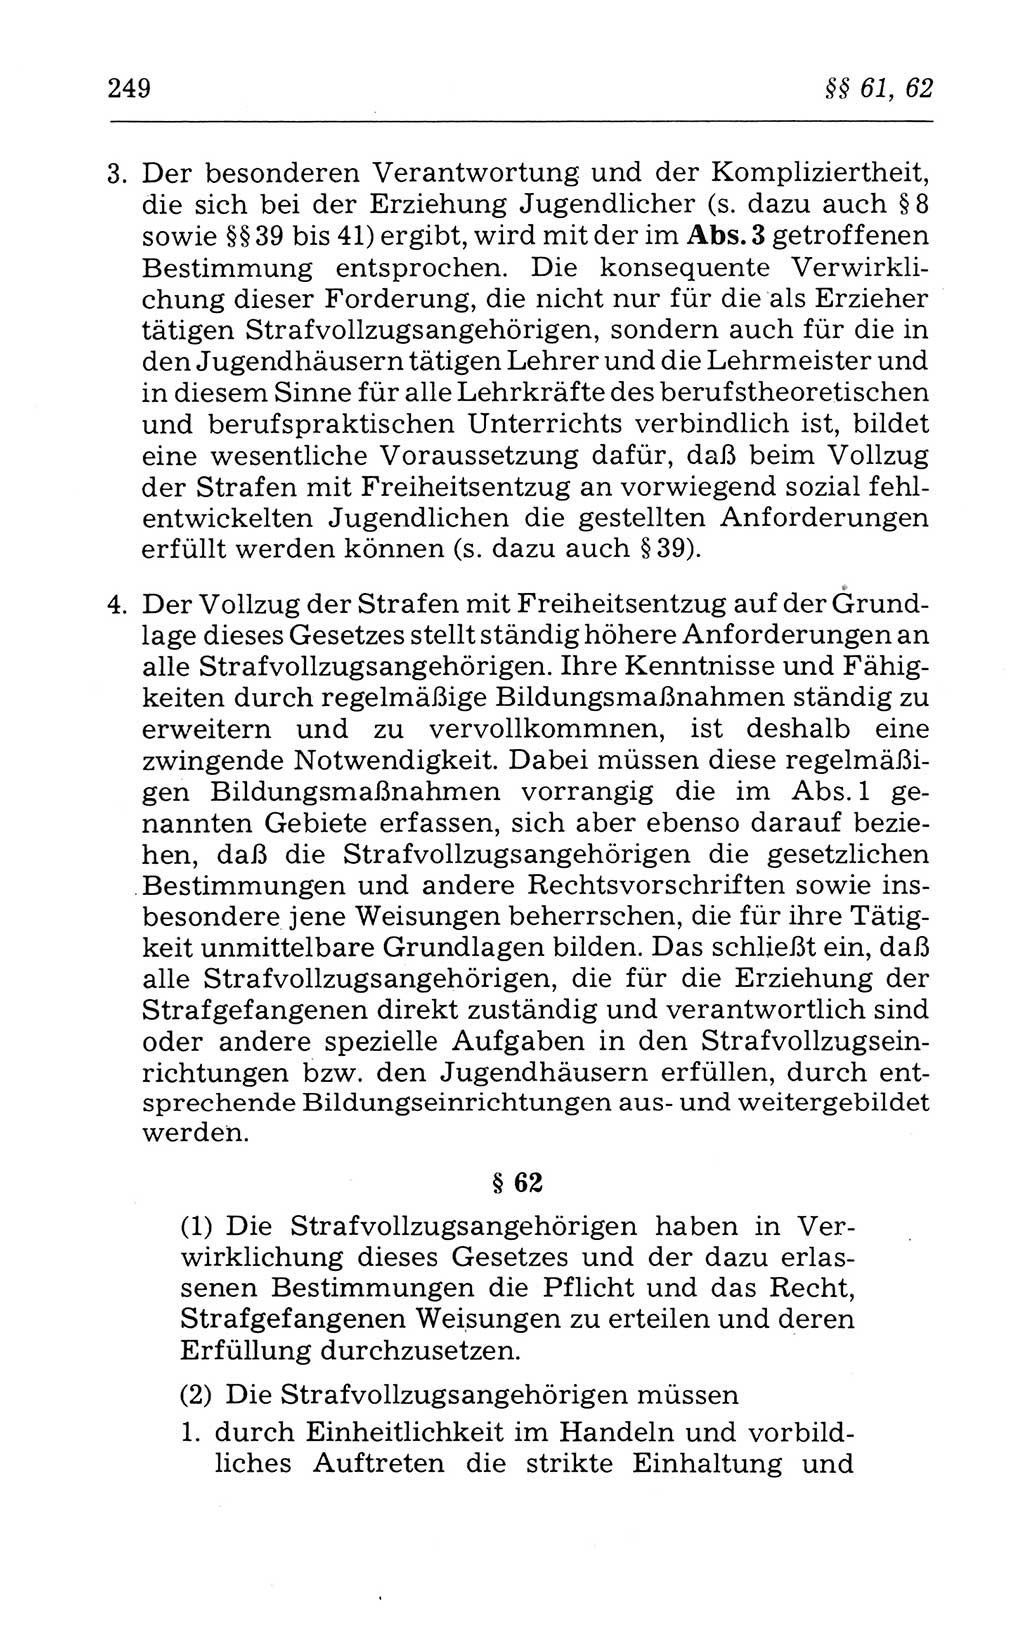 Kommentar zum Strafvollzugsgesetz [(StVG) Deutsche Demokratische Republik (DDR)] 1980, Seite 249 (Komm. StVG DDR 1980, S. 249)